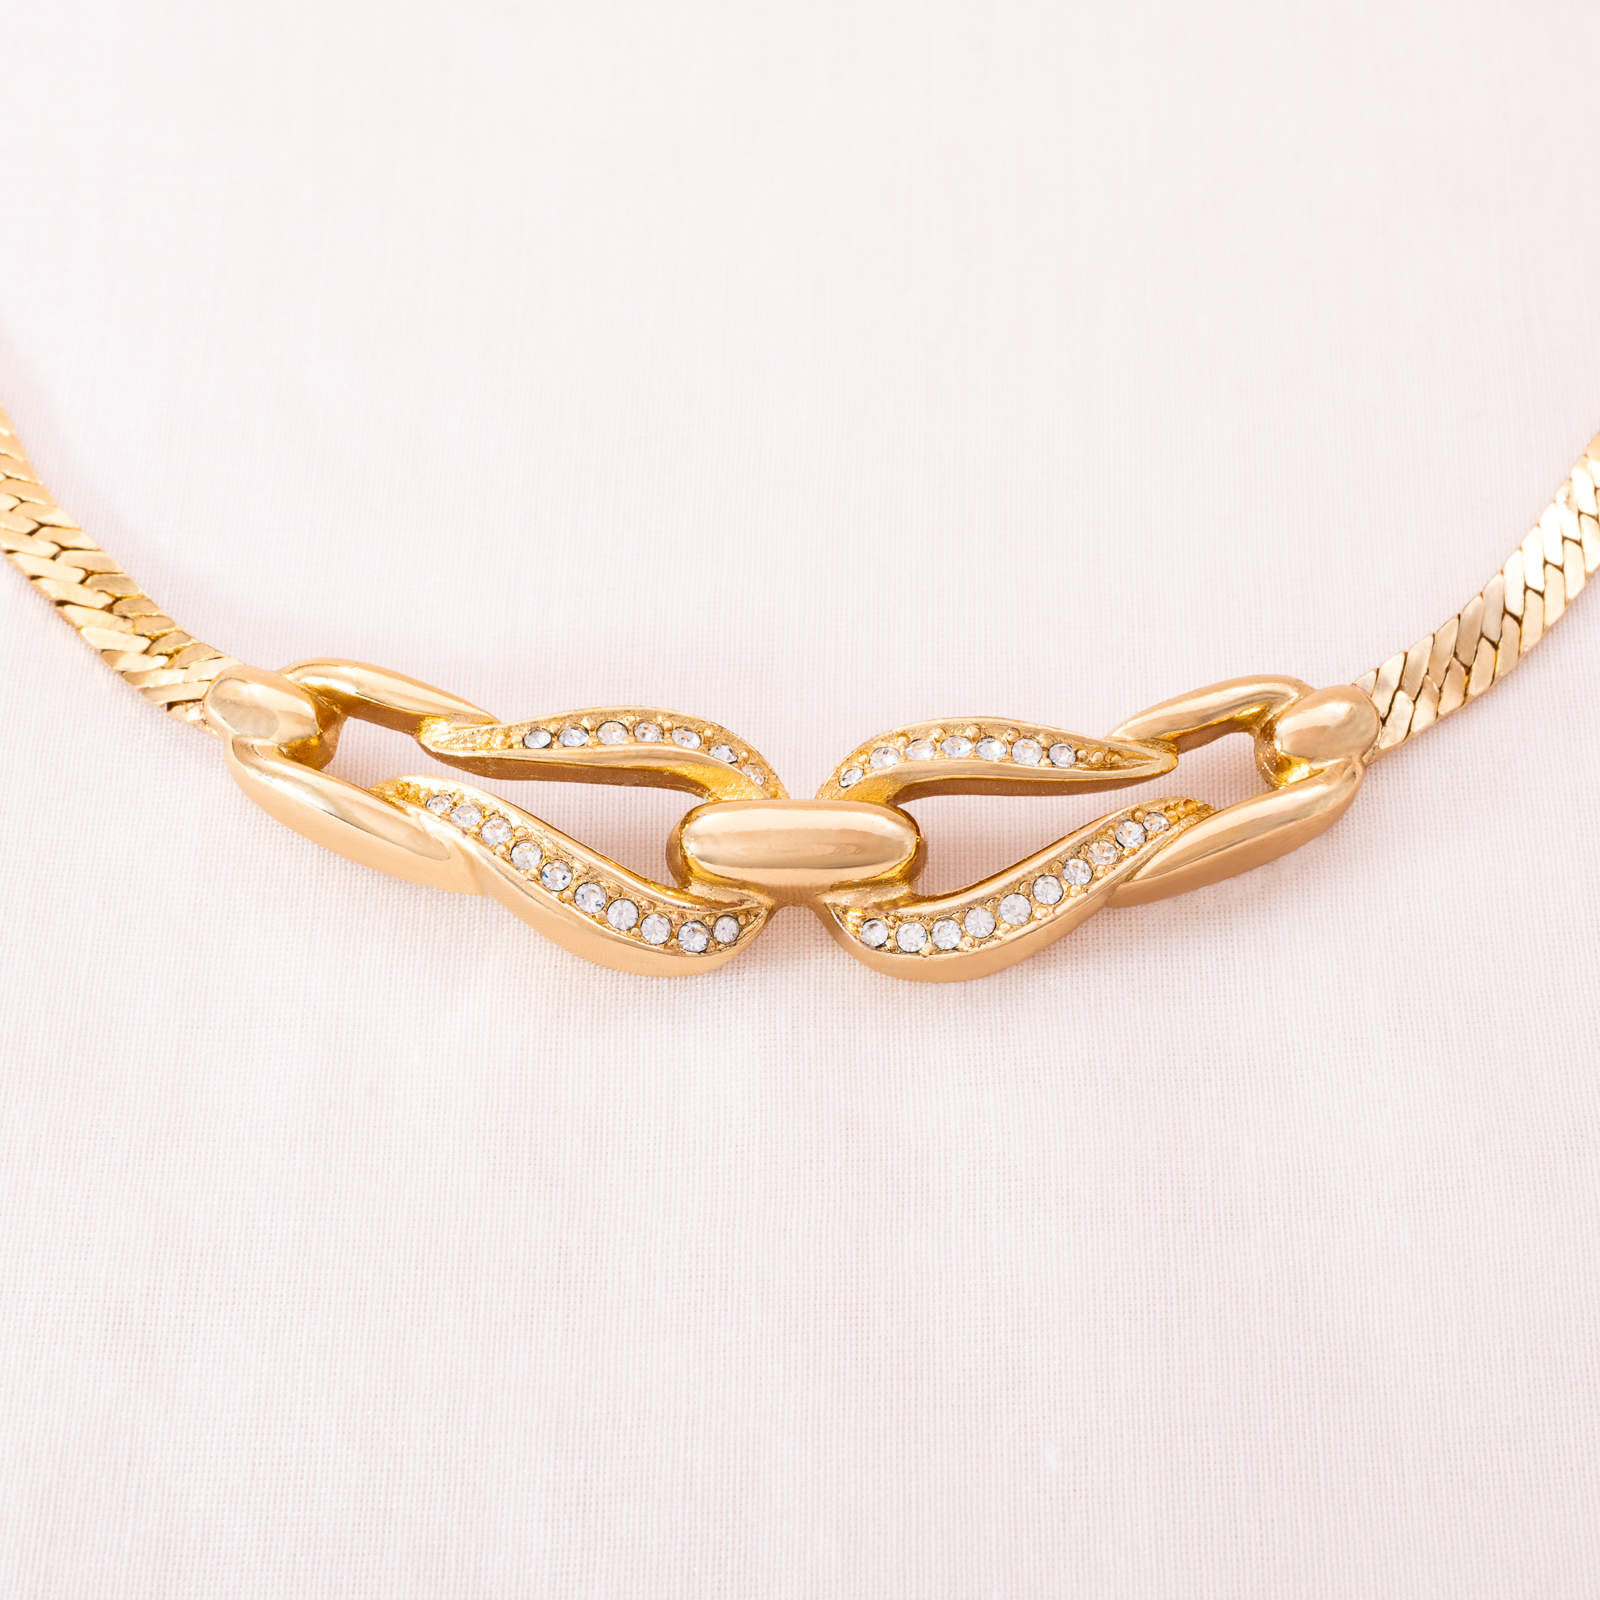 Christian-Dior-klassische-Halskette-vergoldet-mit-Kristallen-besetzt